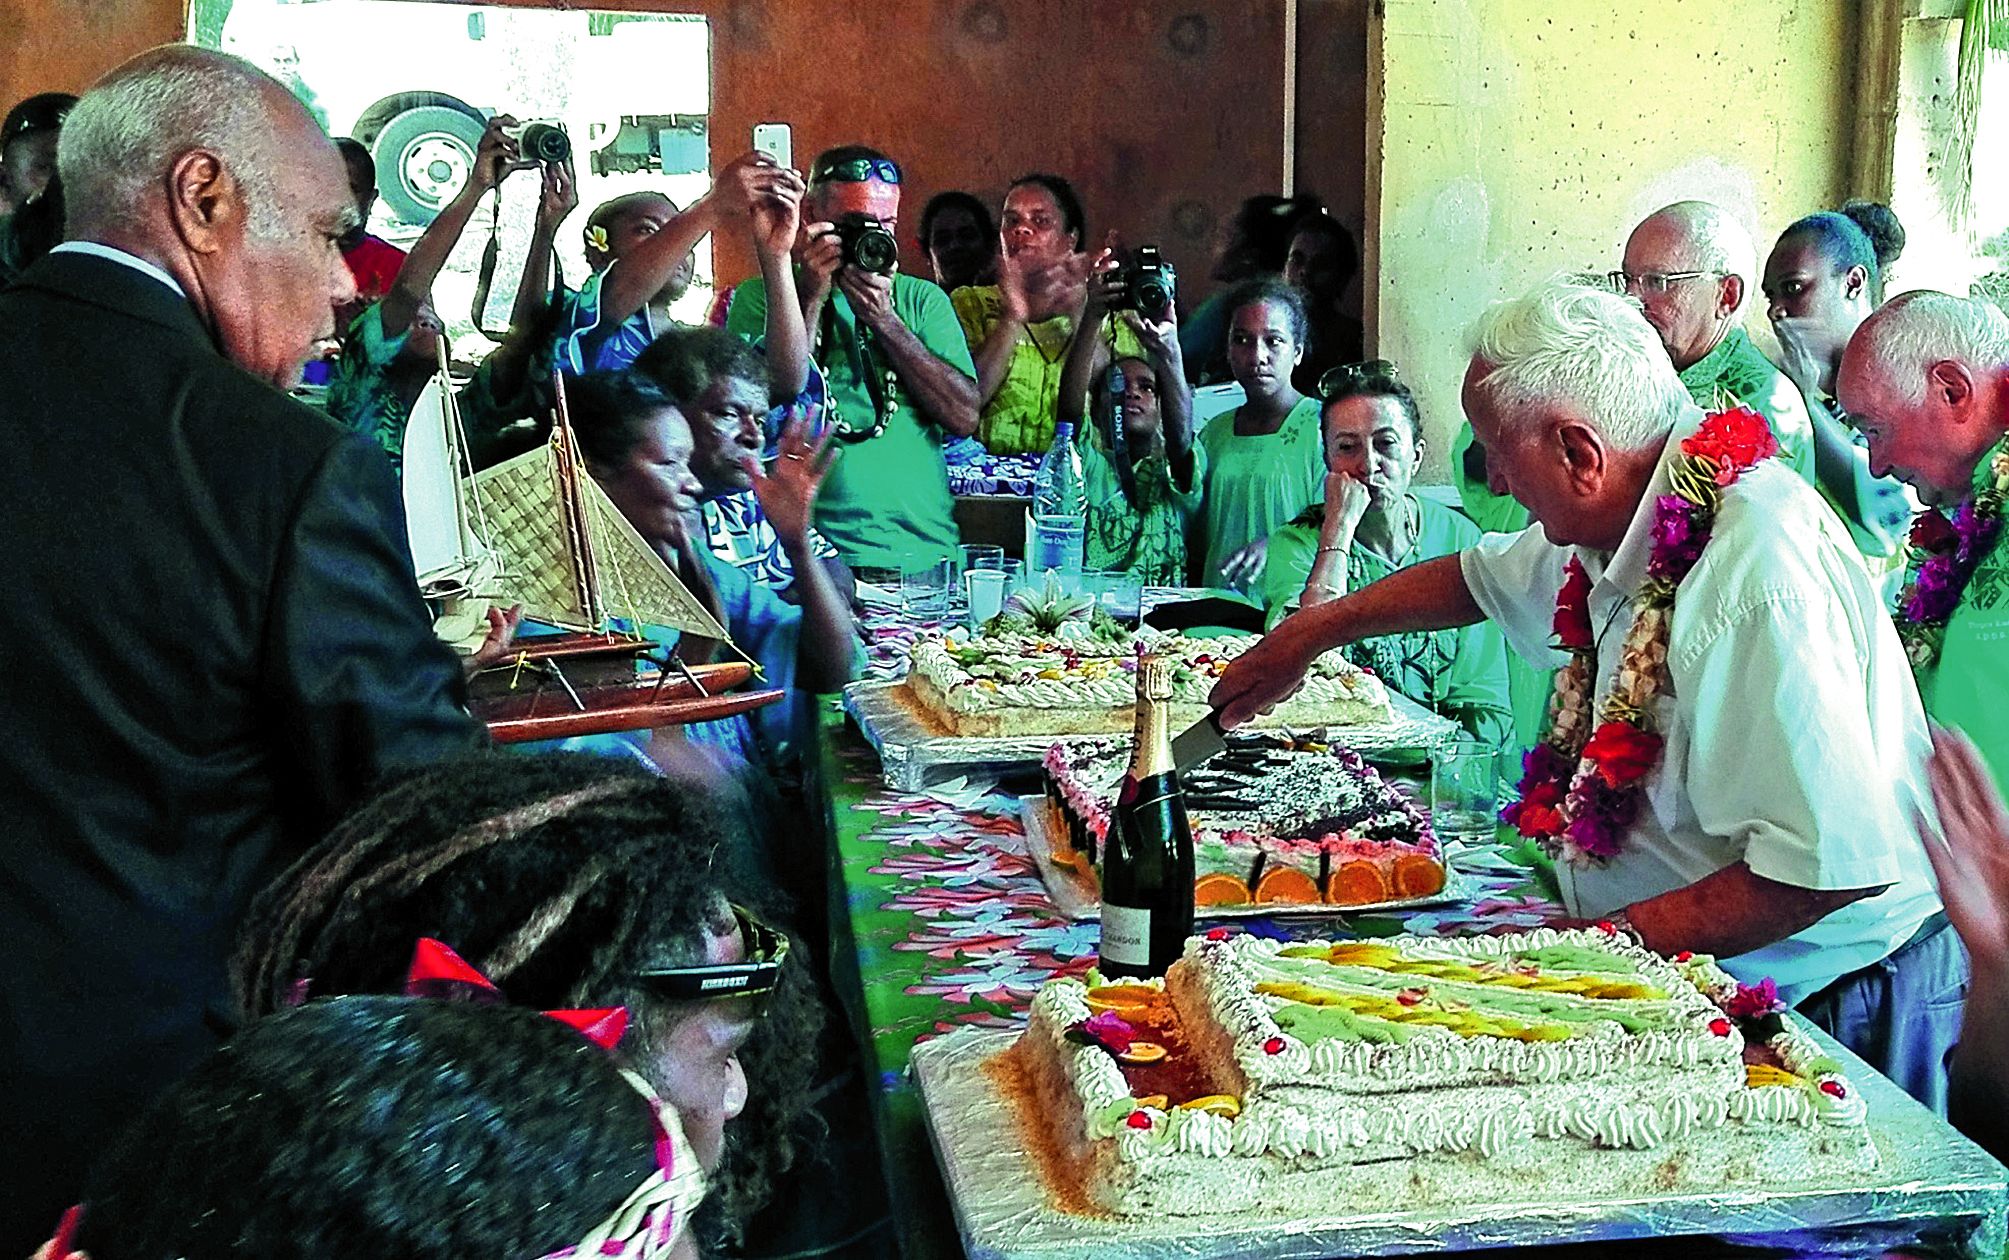 Après les cadeaux, le père Gidrol a partagé les gâteaux confectionnés en son honneur, sous l’œil du grand chef Vendegou.